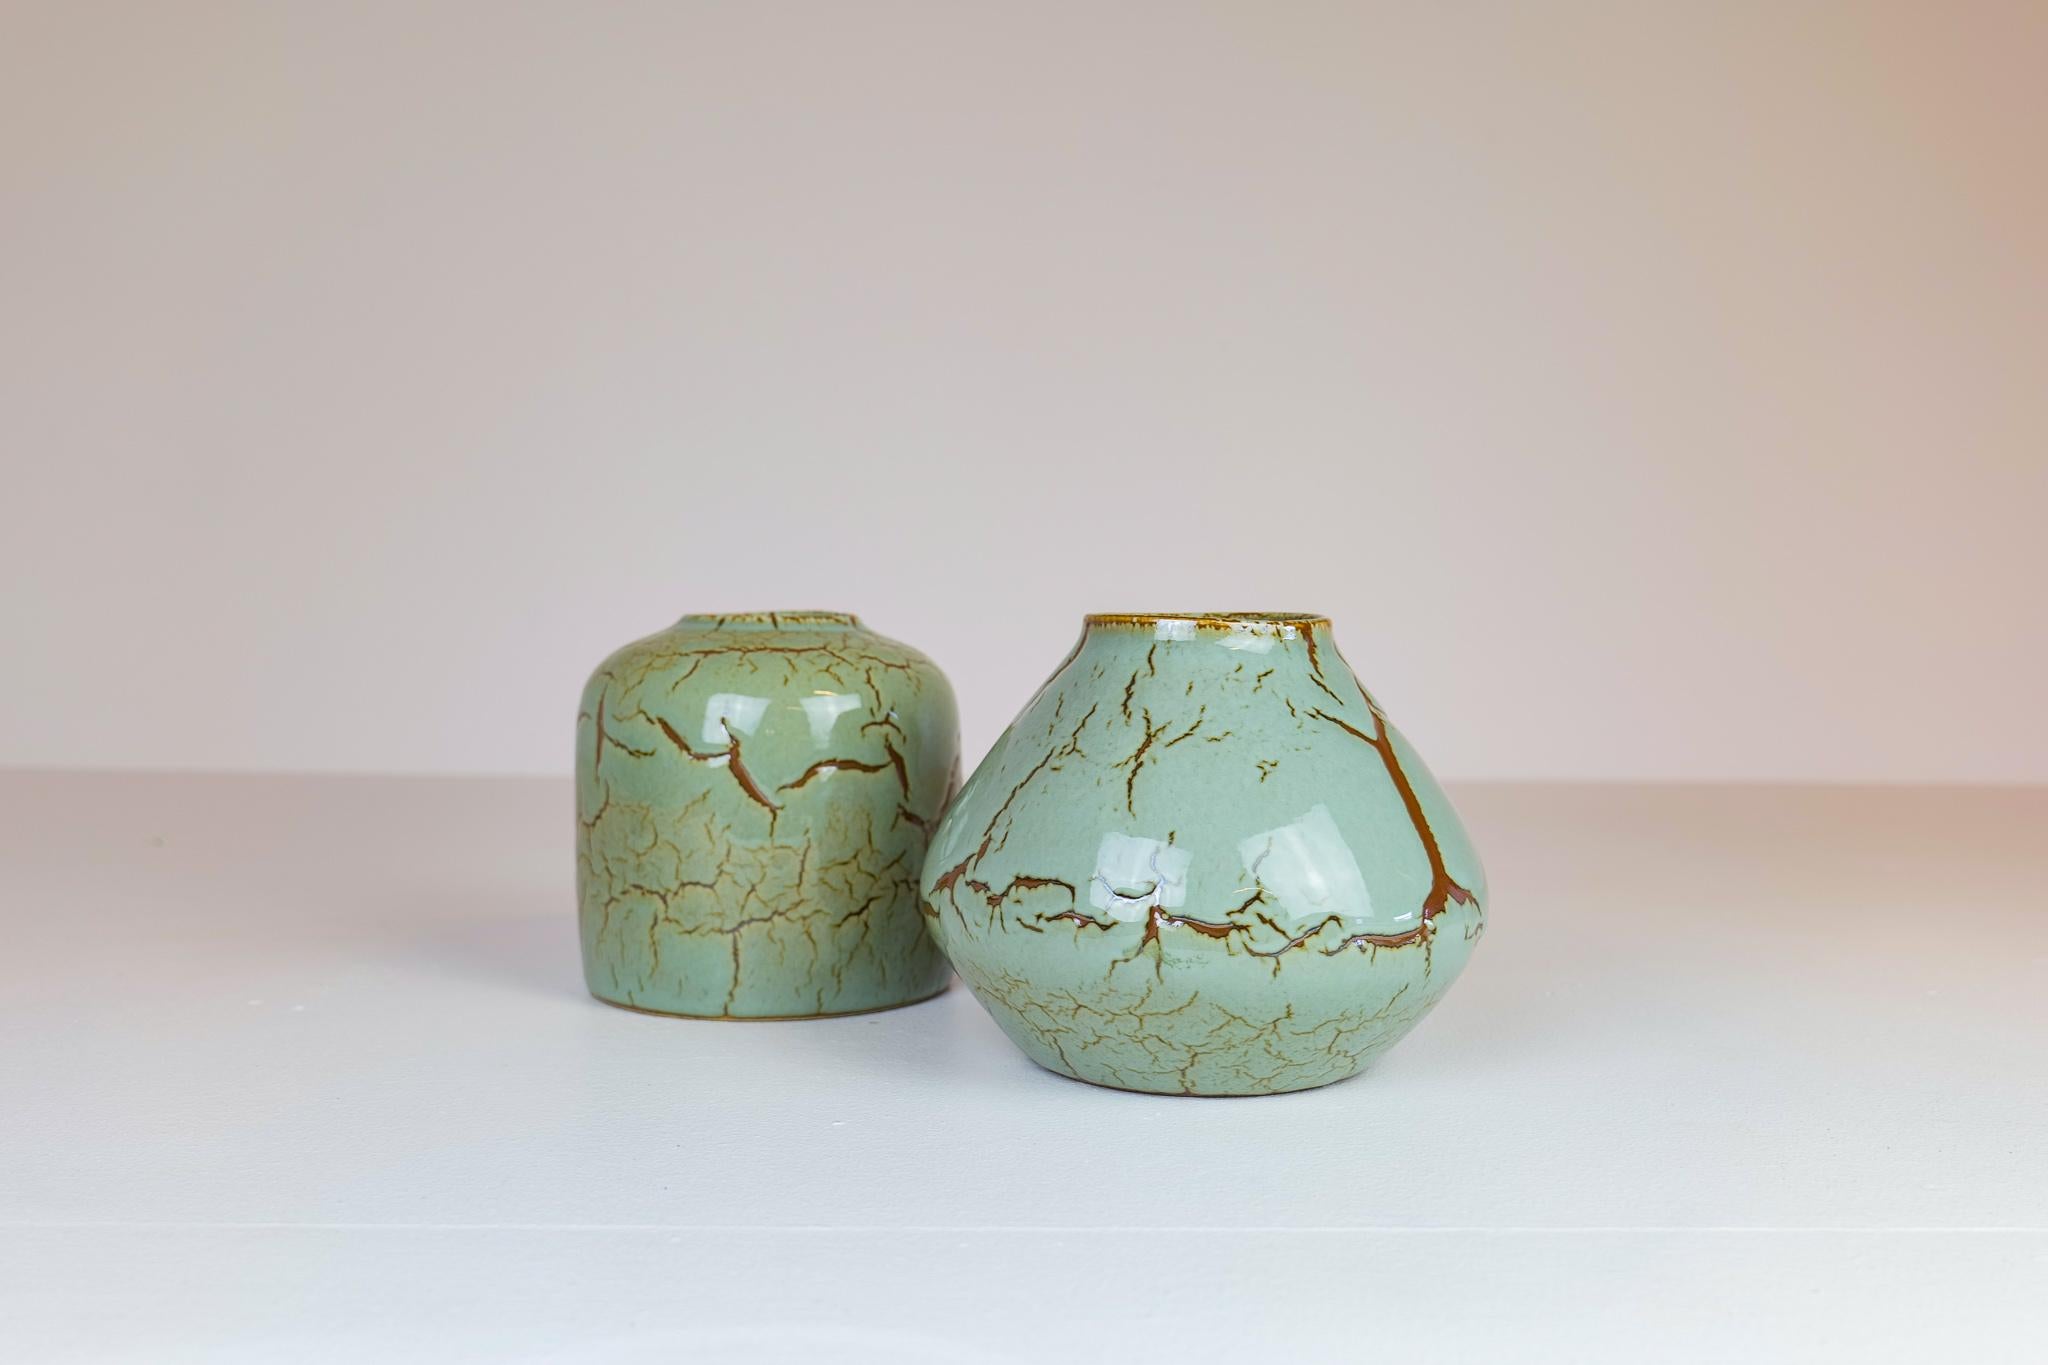 Diese Keramiken wurden in den 1950er Jahren in Schweden für Rörstrand hergestellt und von einem der großen schwedischen Keramikdesigner, Carl-Harry Stålhane, entworfen. Es ist eine atemberaubende schöne hellgrüne Farbe mit einzigartigen geknackt